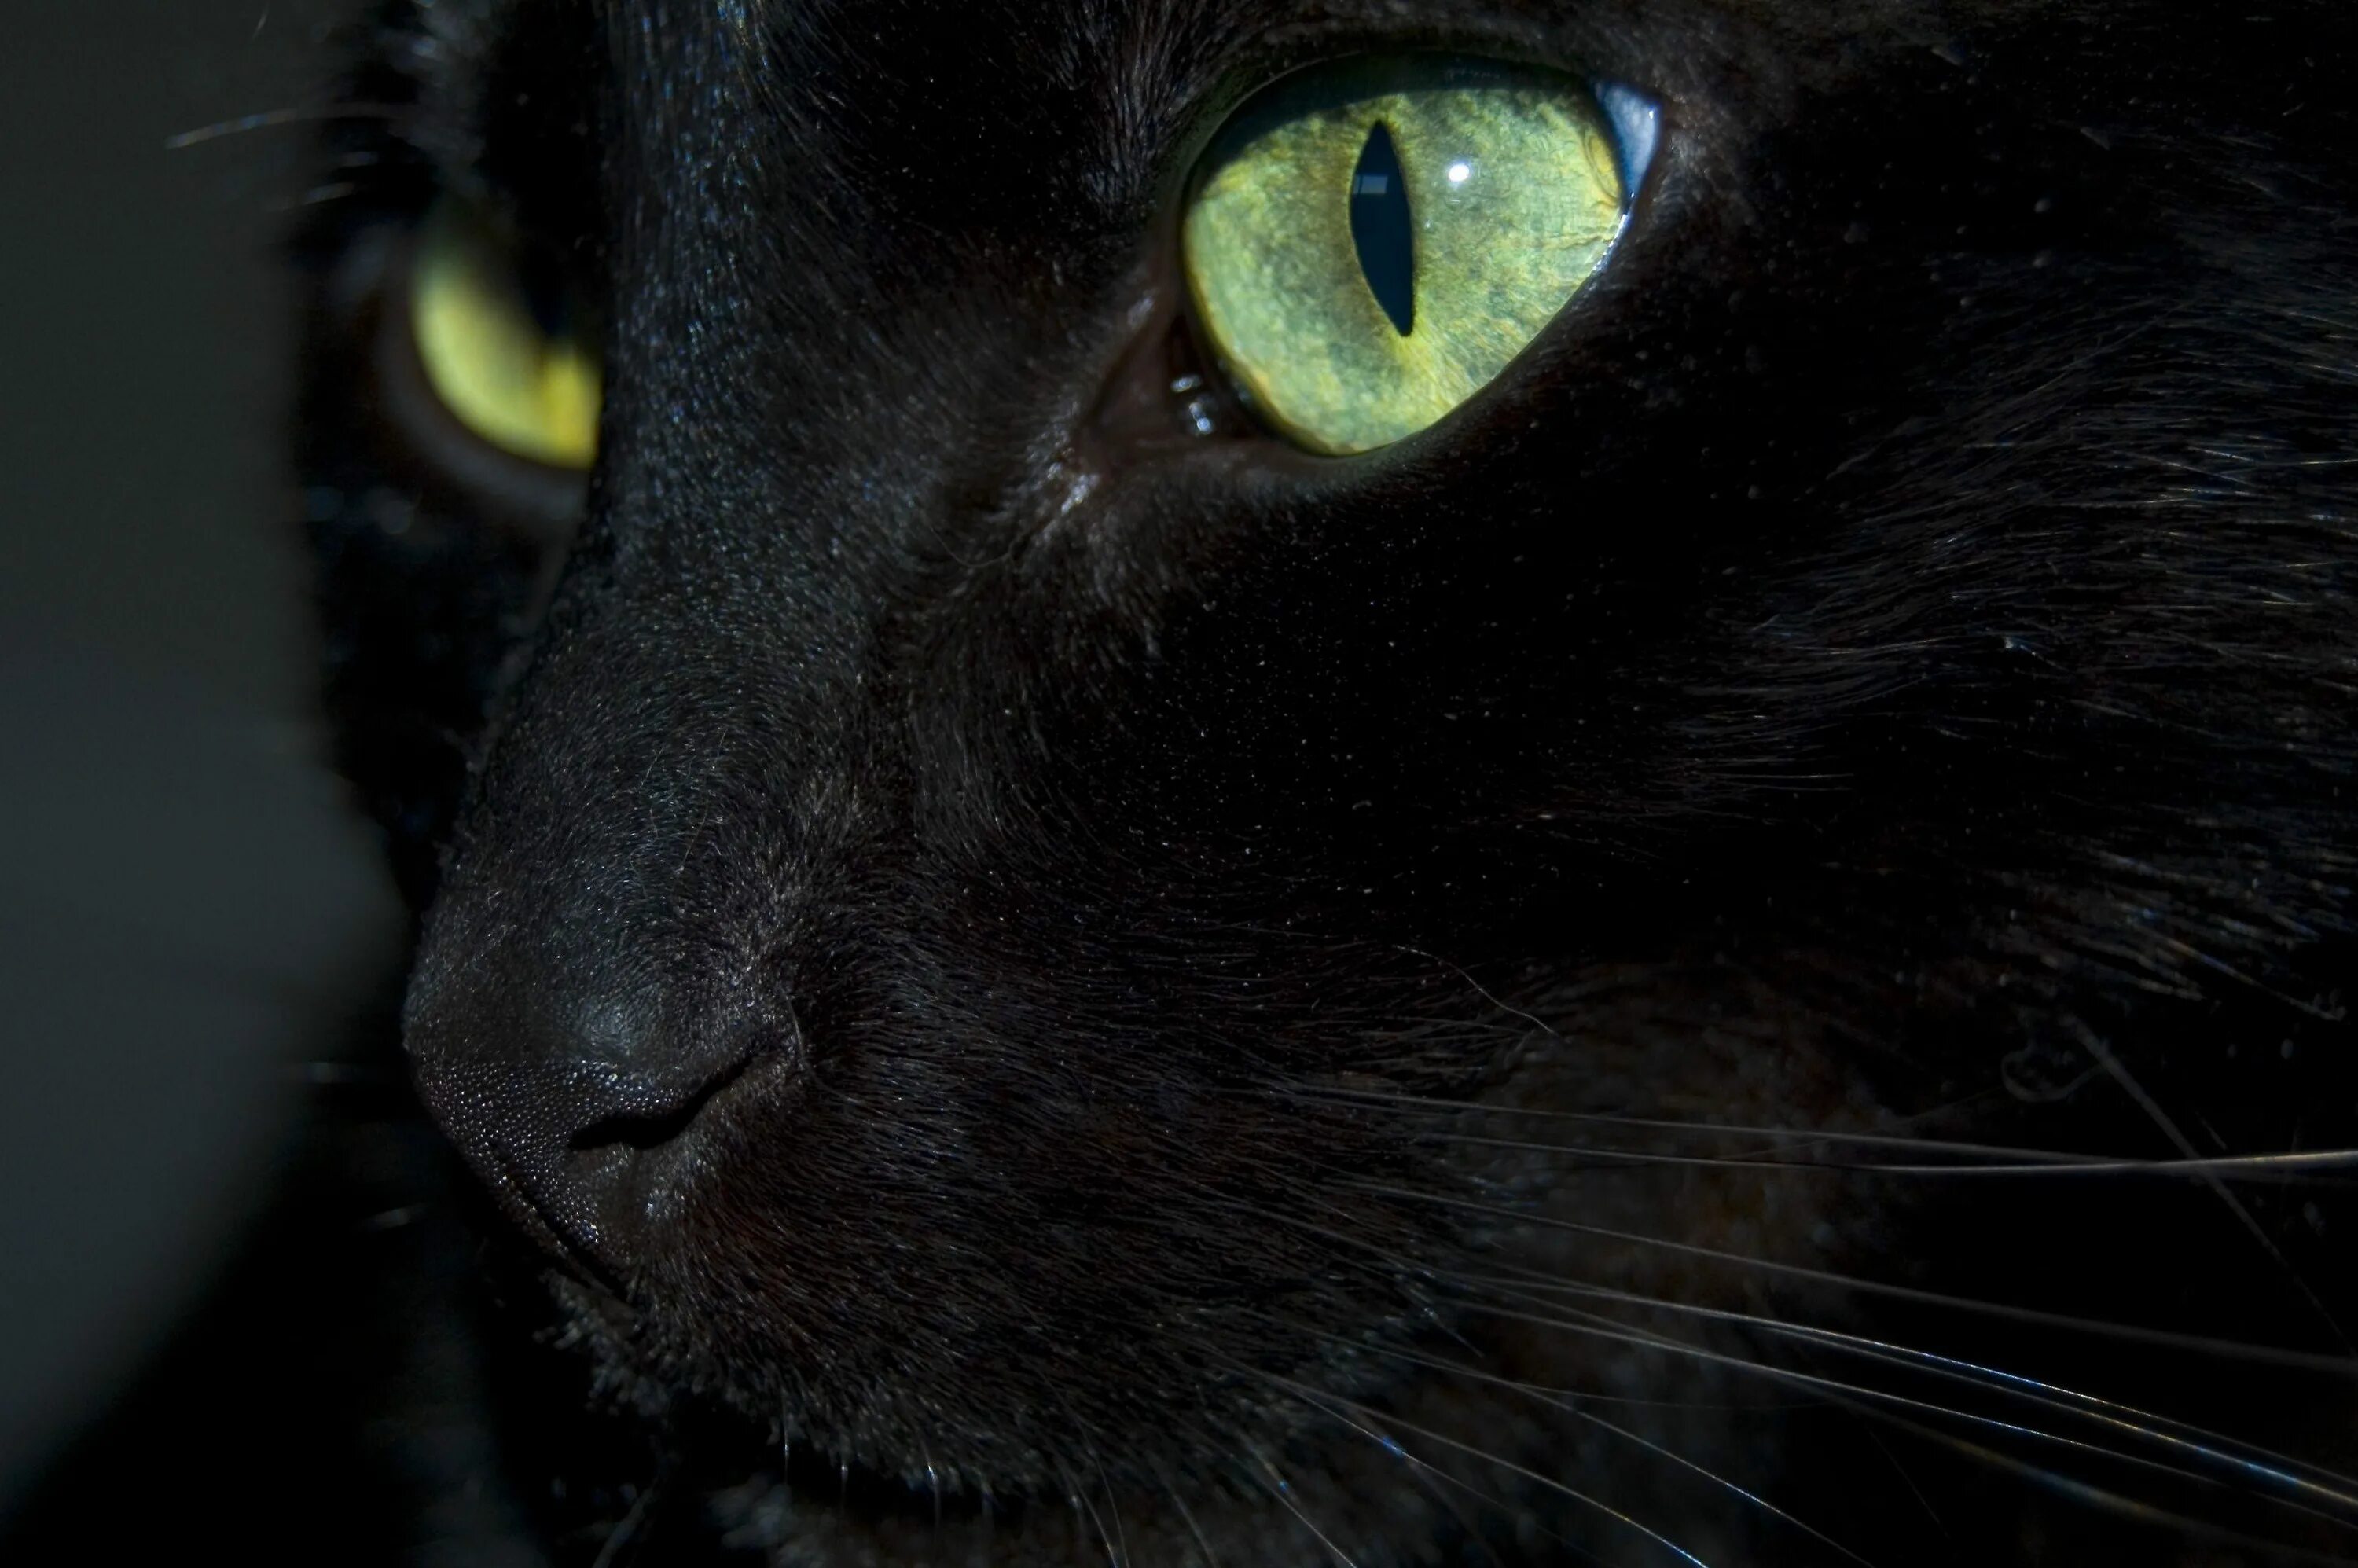 Black cat eye. Черная кошка с зелеными глазами. Чёрный кот. Чёрный кот с зелёными глазами. Черный кот с голубыми глазами.